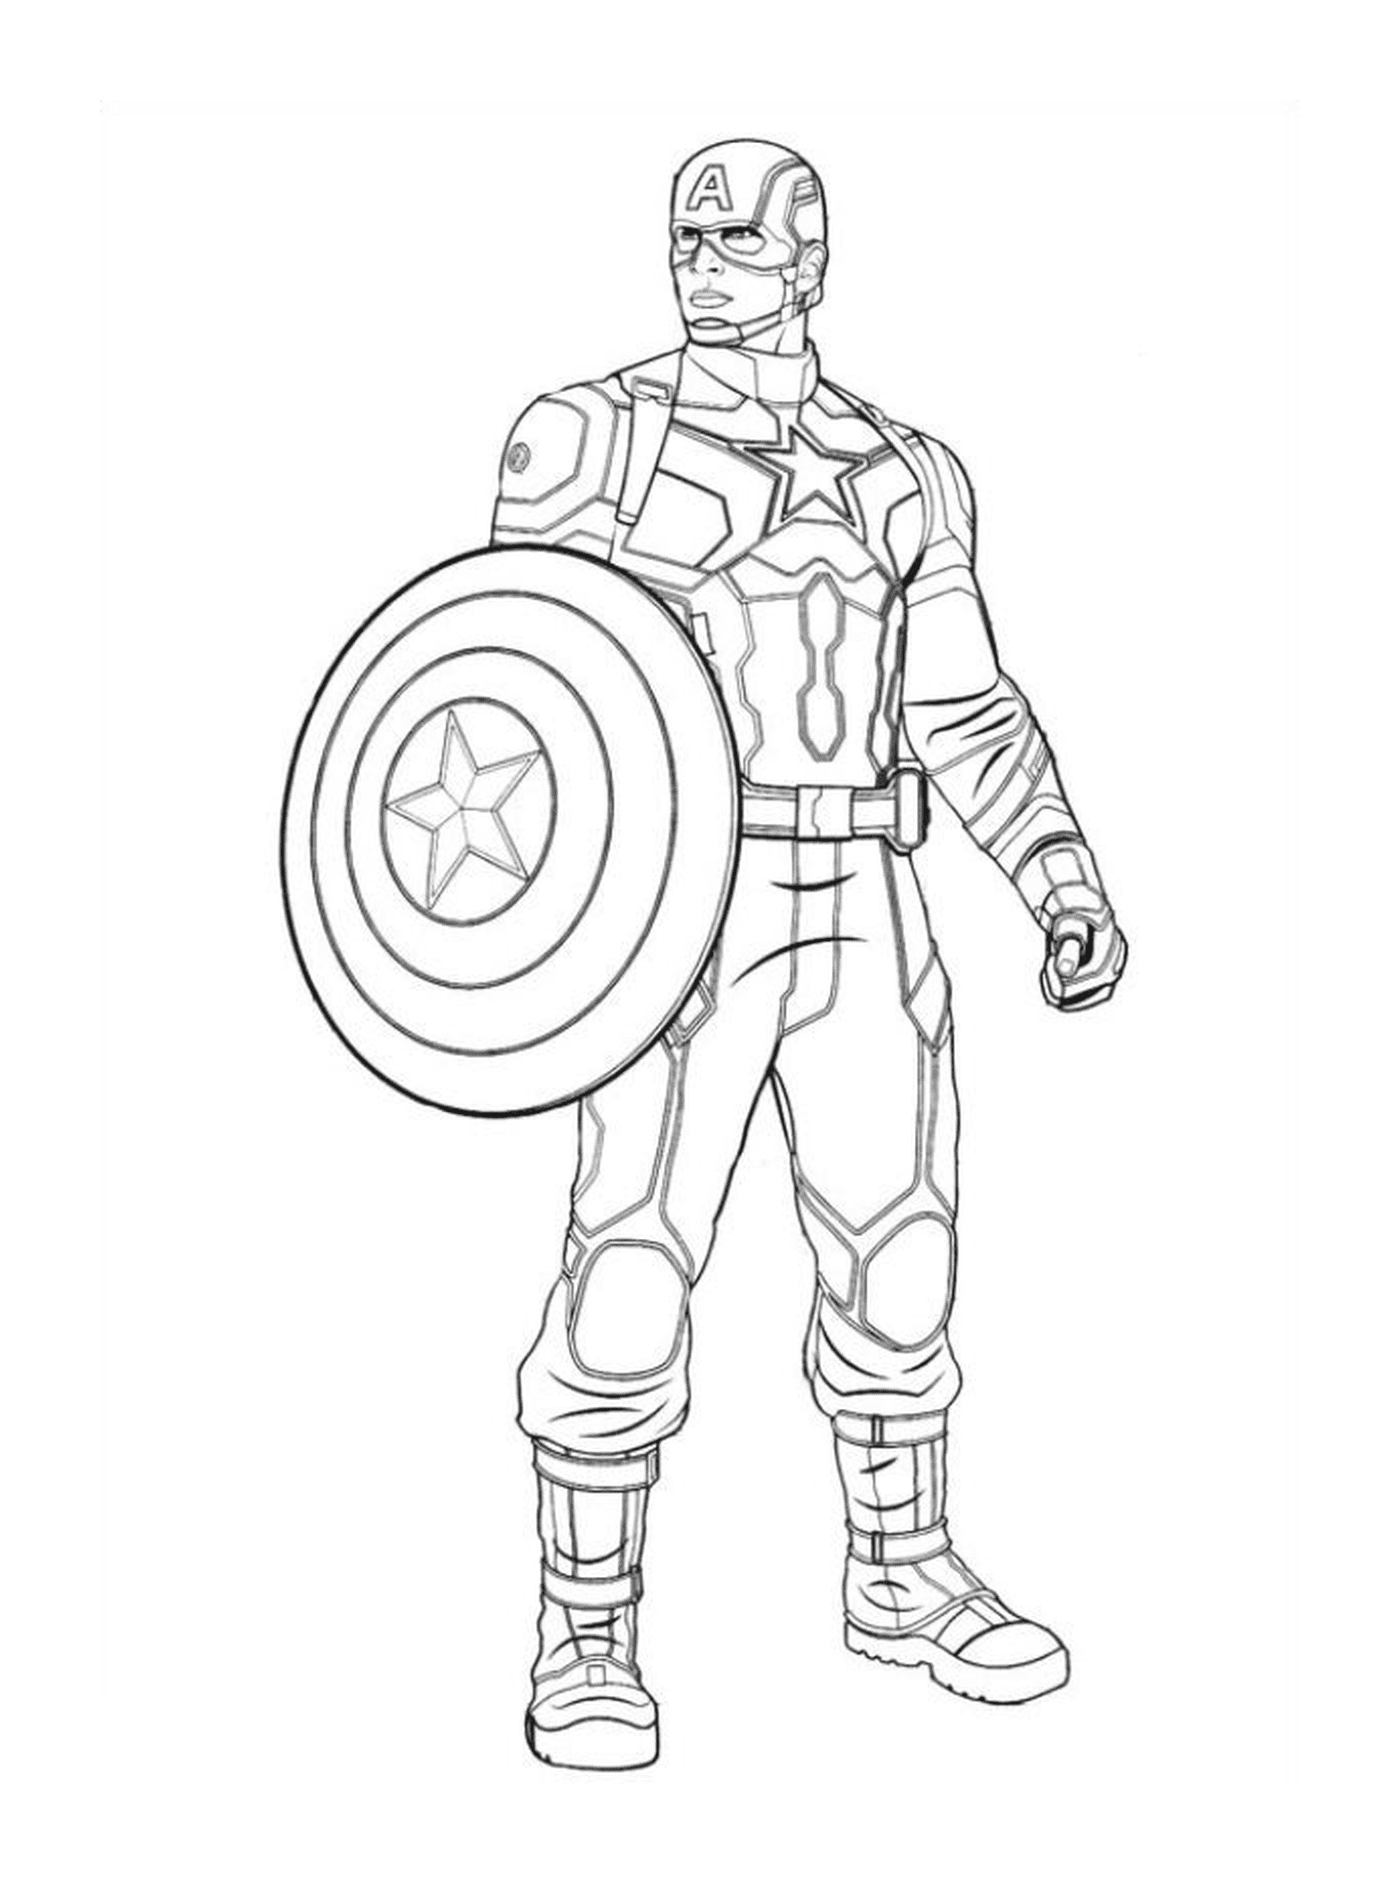  un uomo con uno scudo (immagine non correlata a Captain America) 